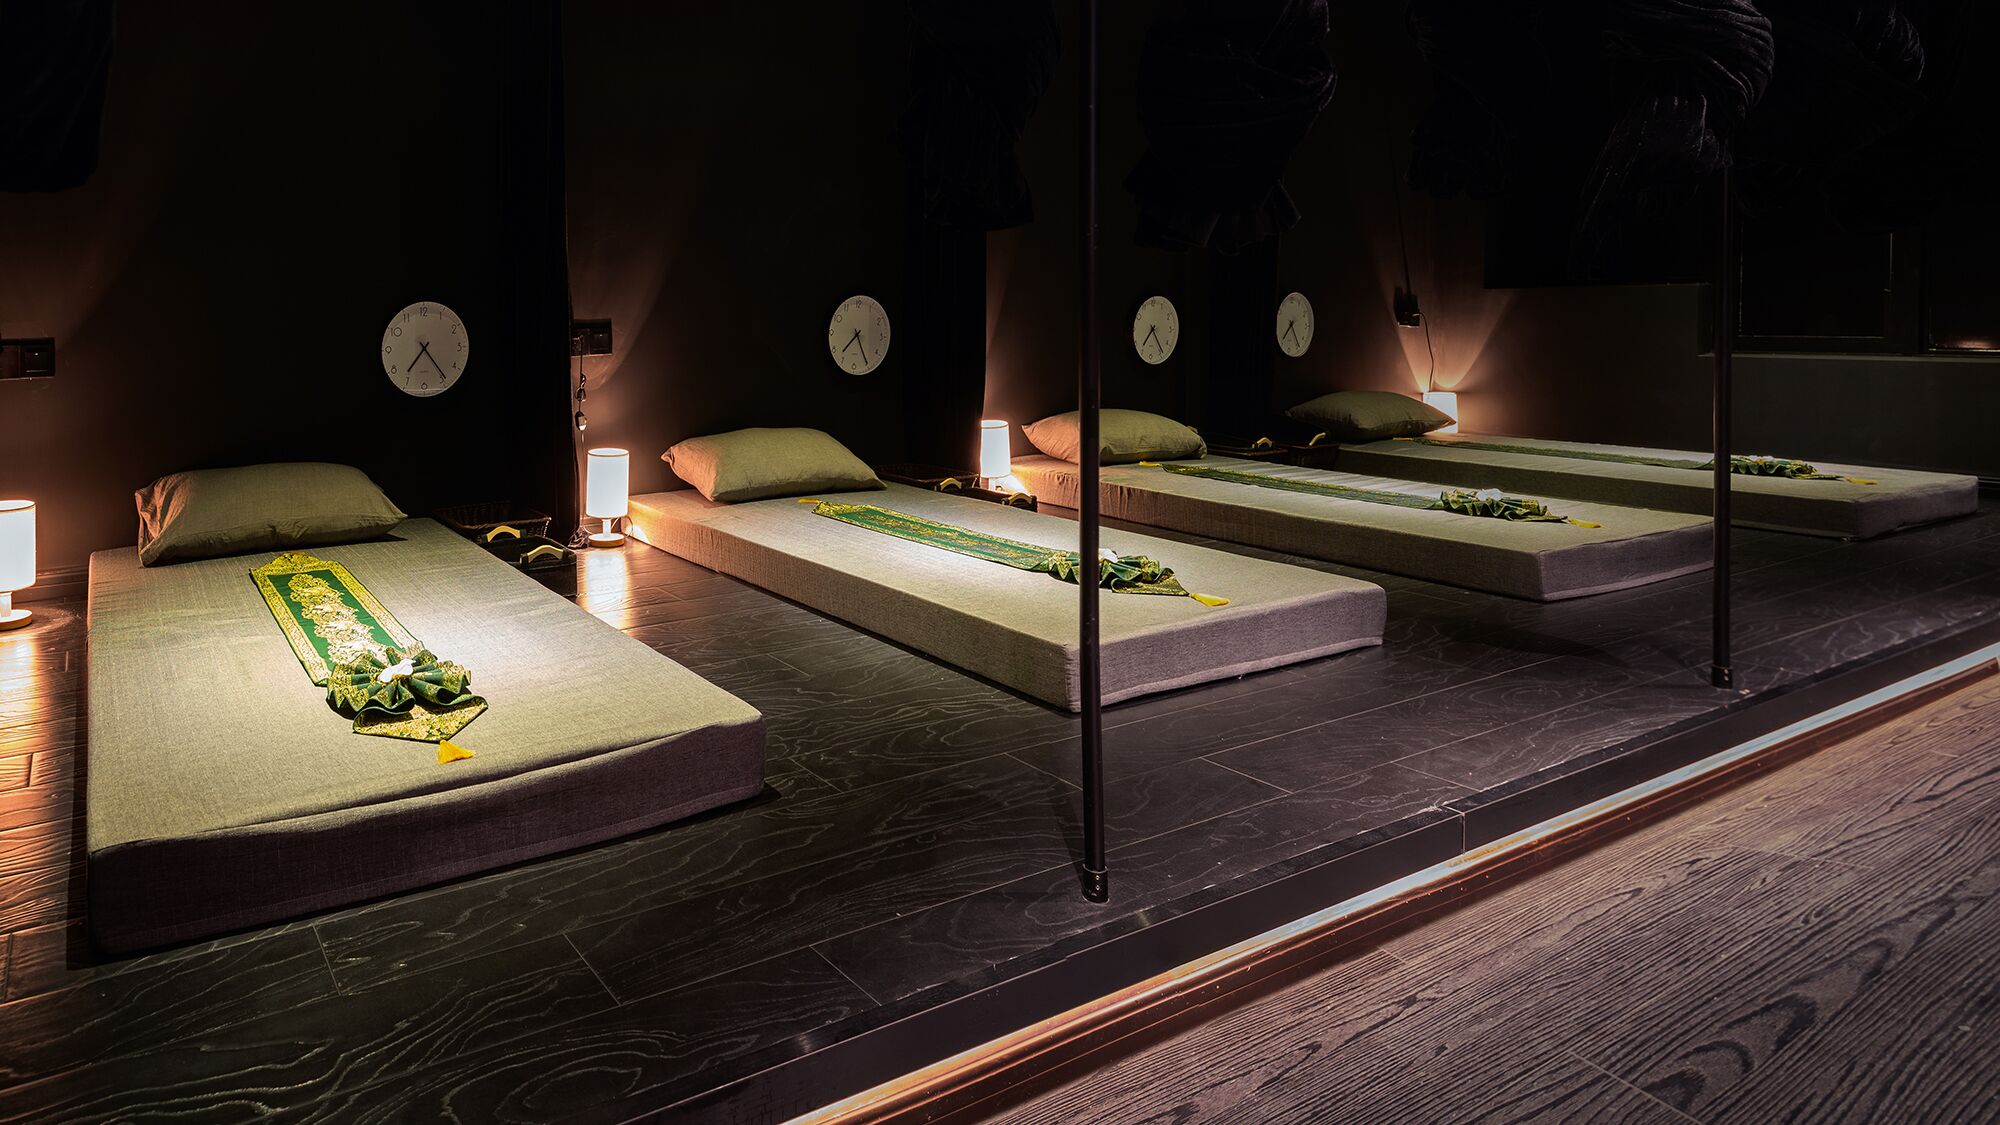 Aroma Dream Thai Massage & Spa in Shenzhen, China by DDDD Creative Studio